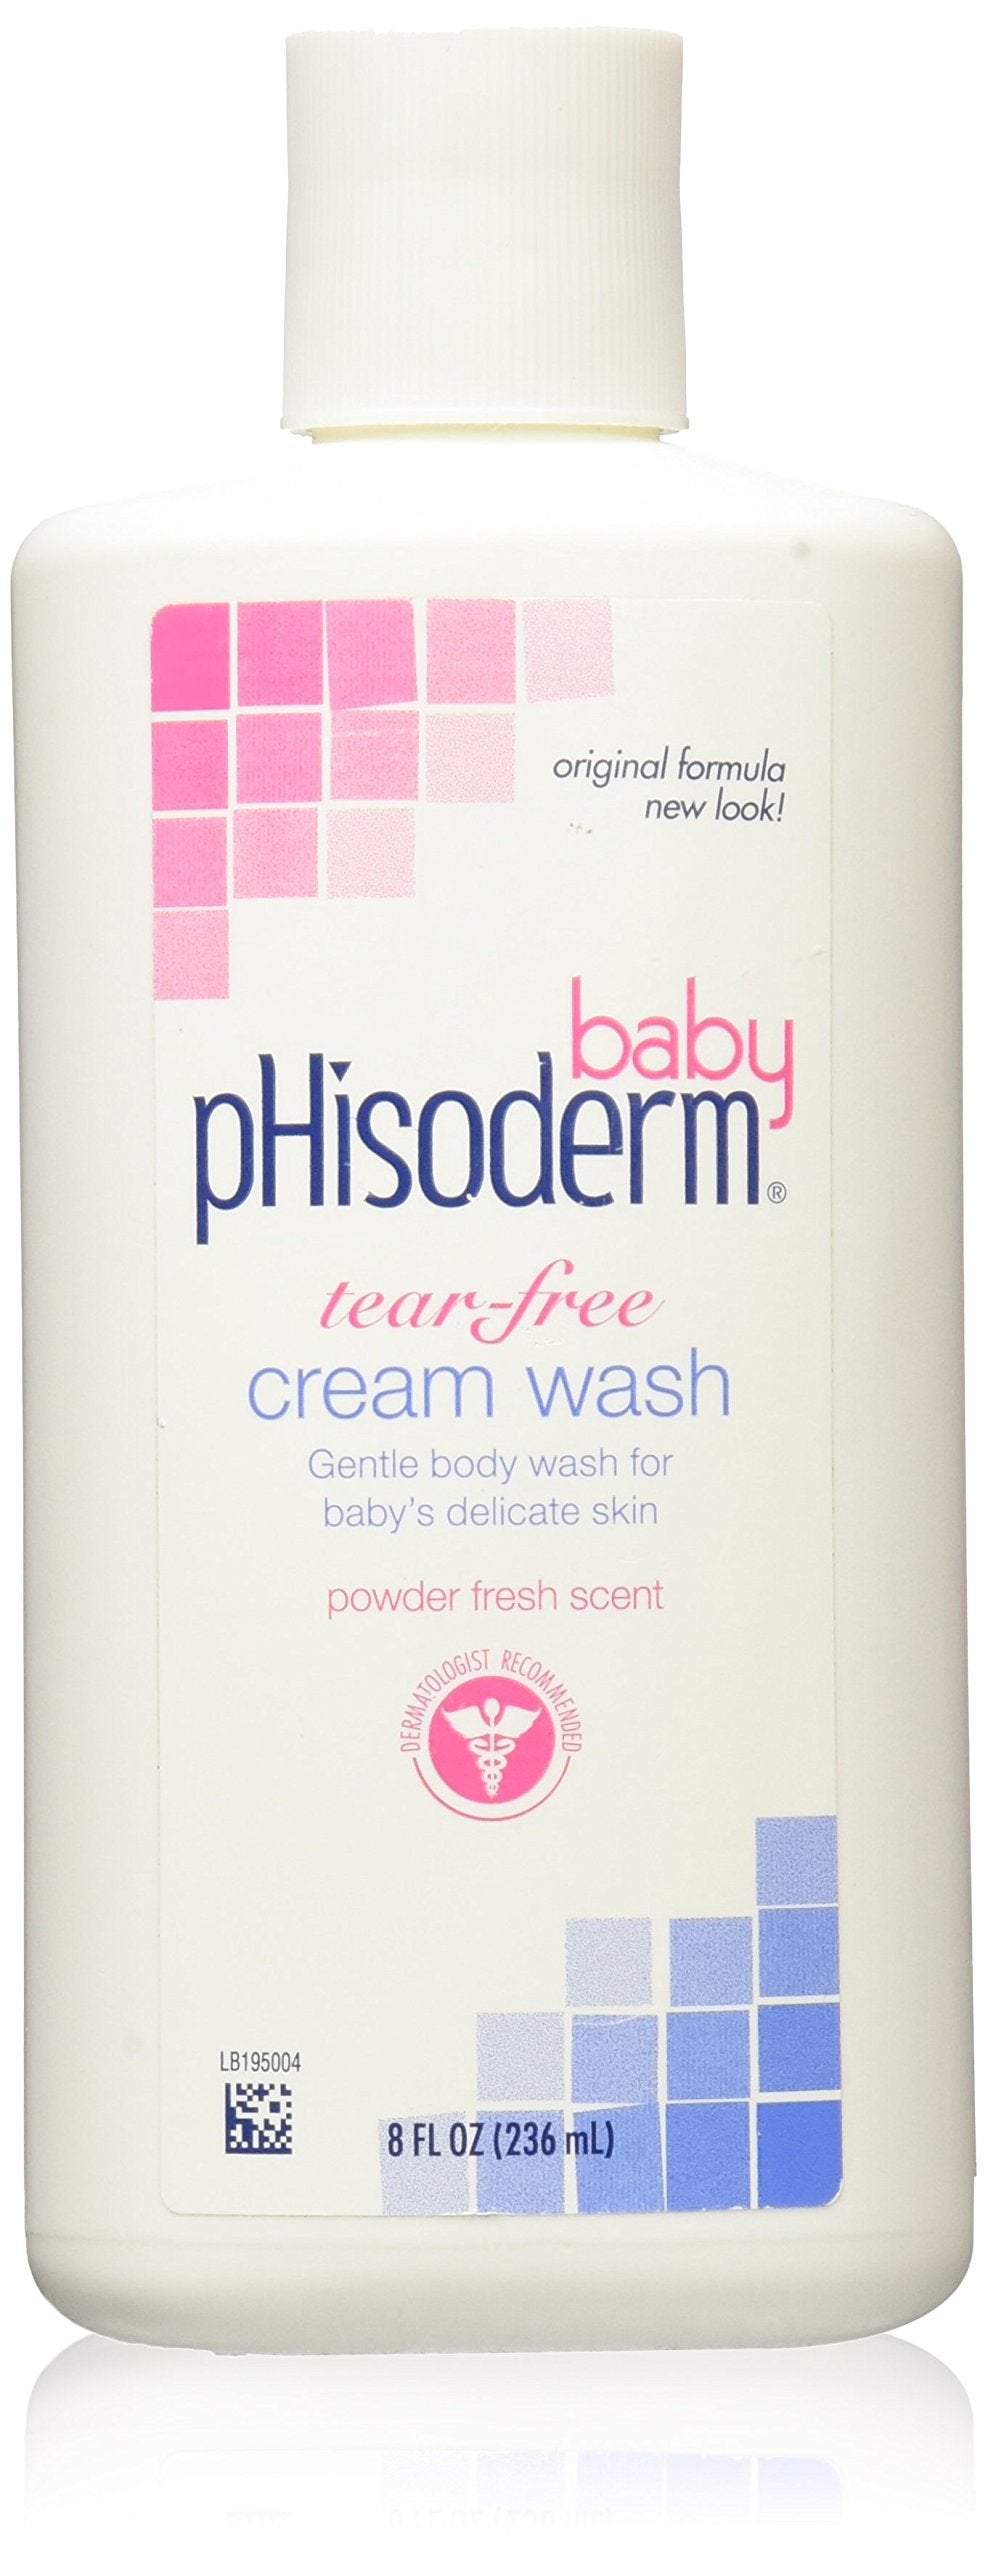 PHISODERM Baby Cream WASH Size: 8 OZ